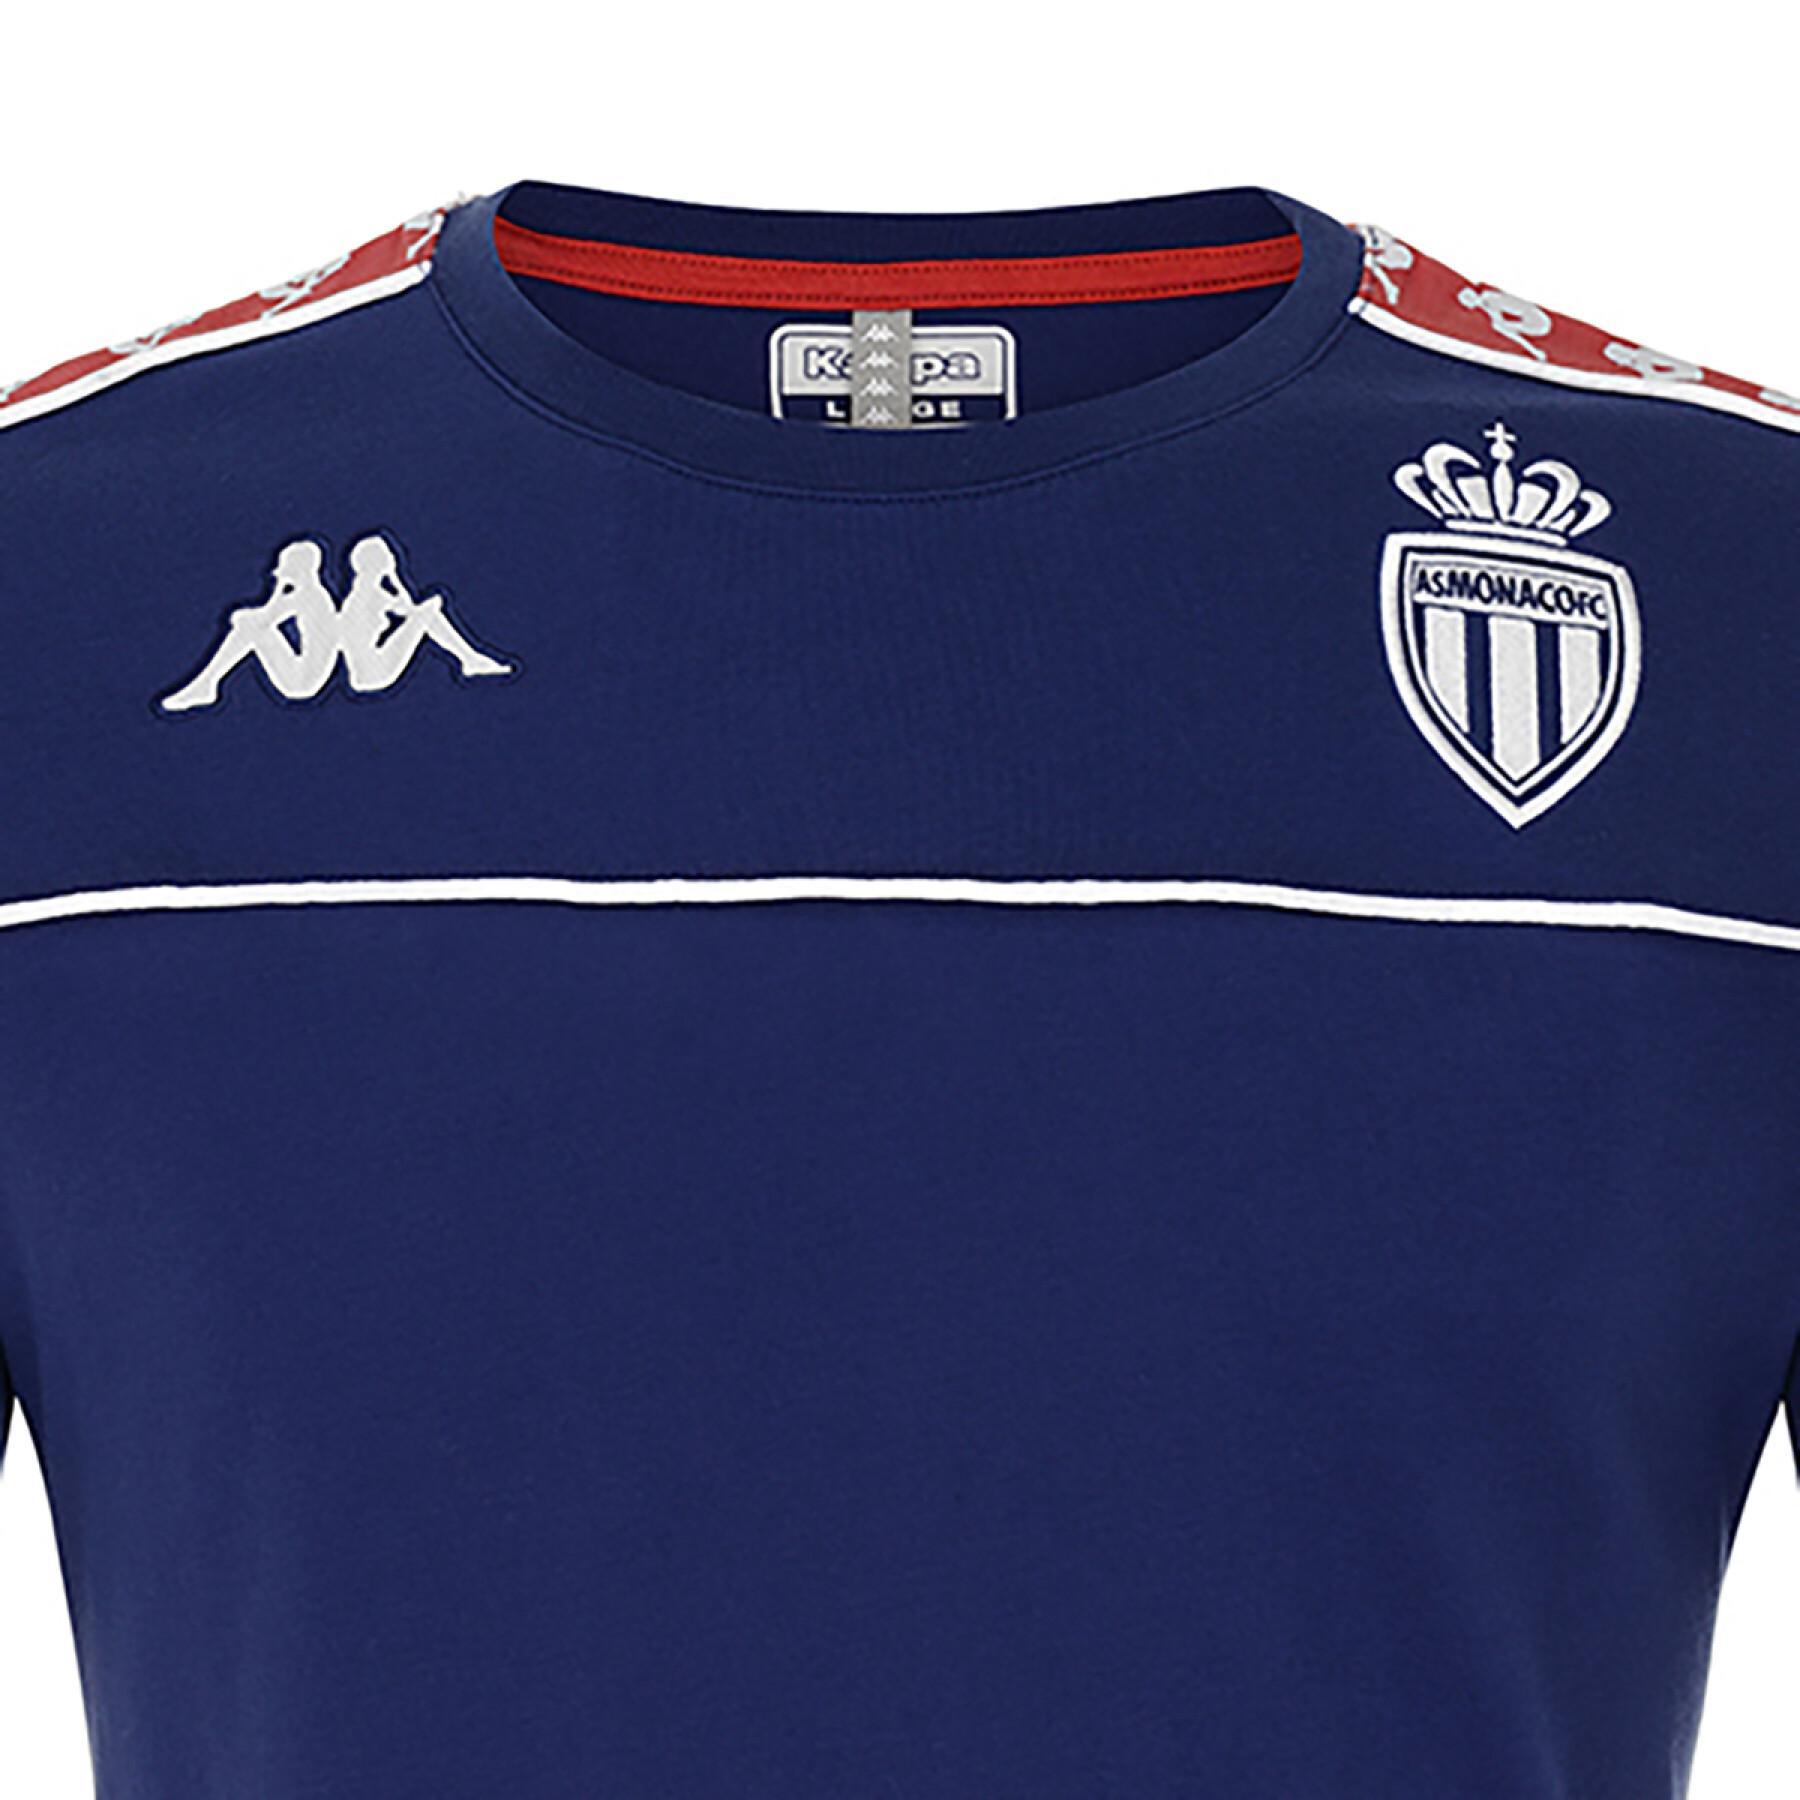 Kinder-T-Shirt AS Monaco 2021/22 222 banda arari slim